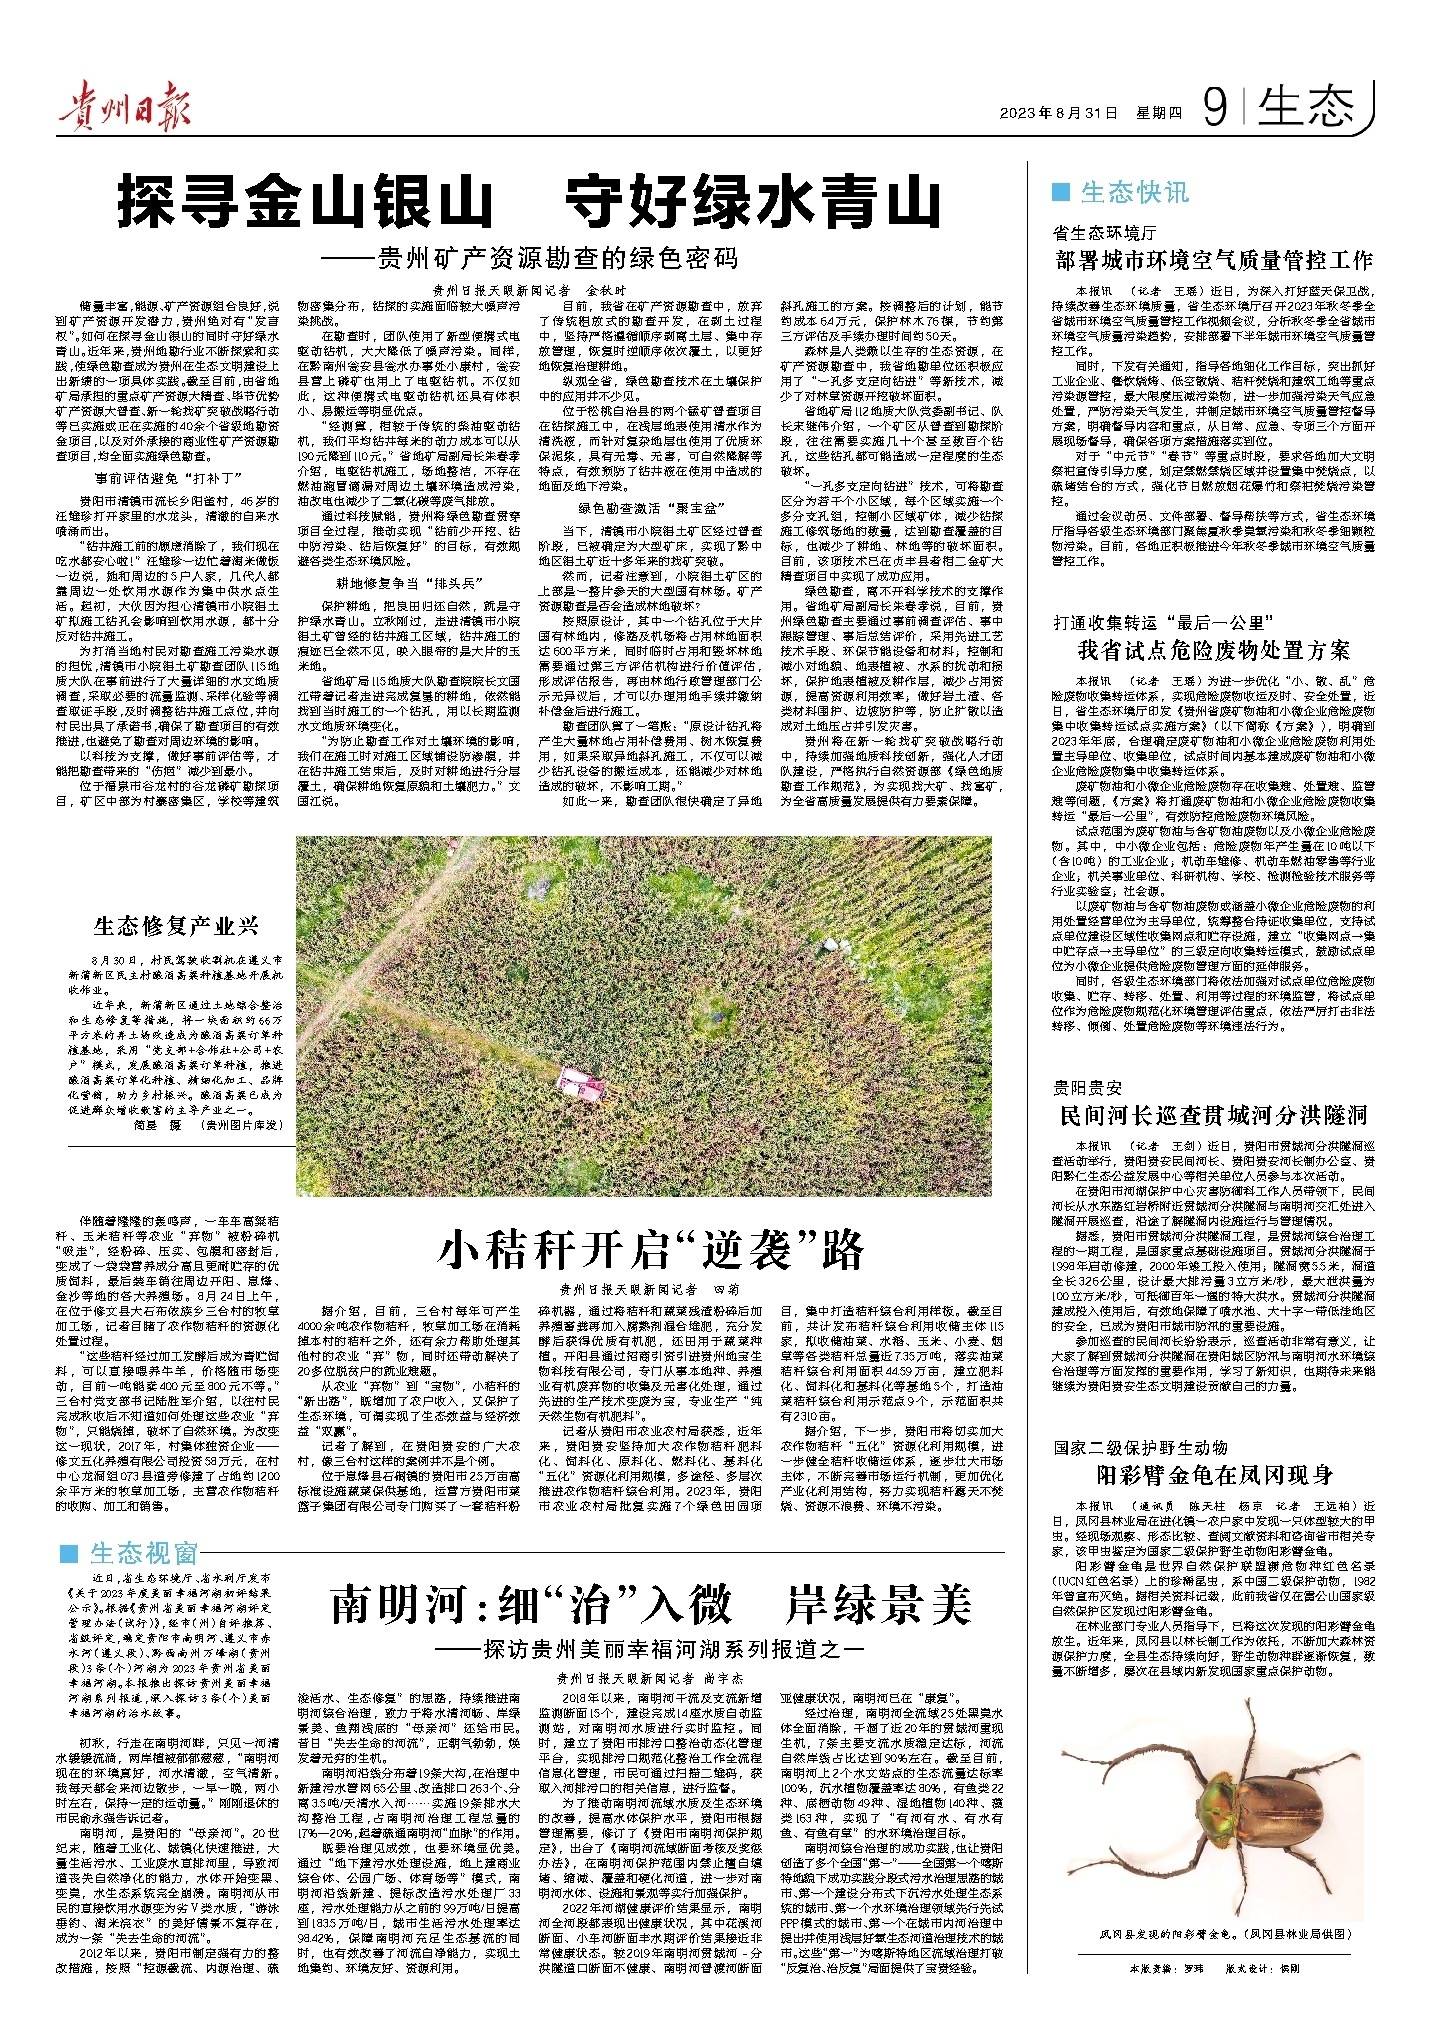 版面速览 | 8月31日贵州日报《生态》新闻版